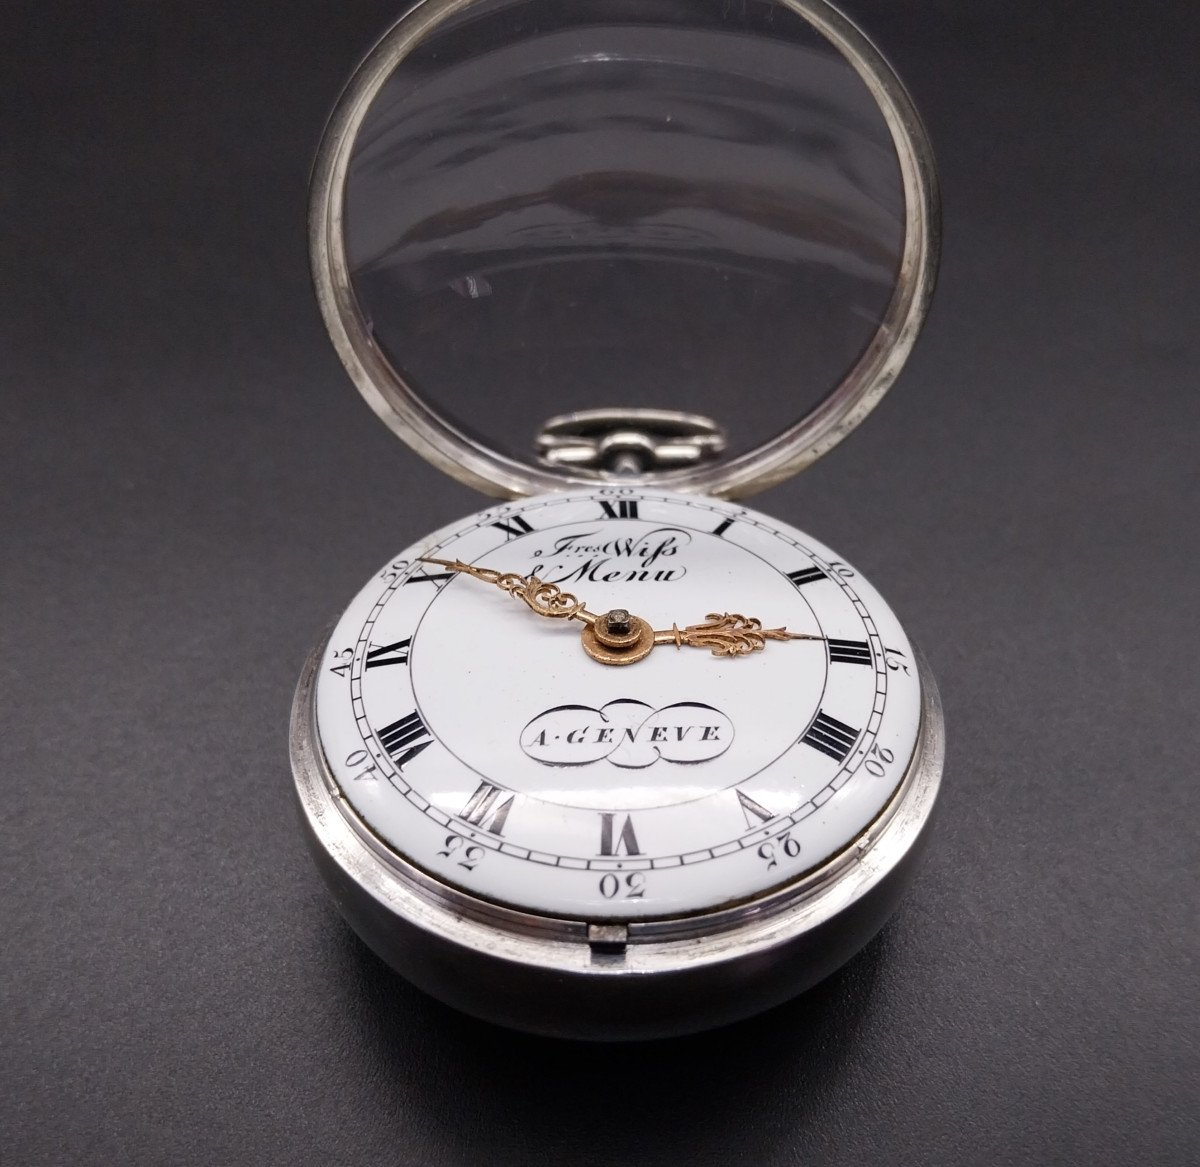 Orologio da tasca con scappamento a verga, firmato "Freres Wiss et Menu a Geneve", fine 700-photo-2